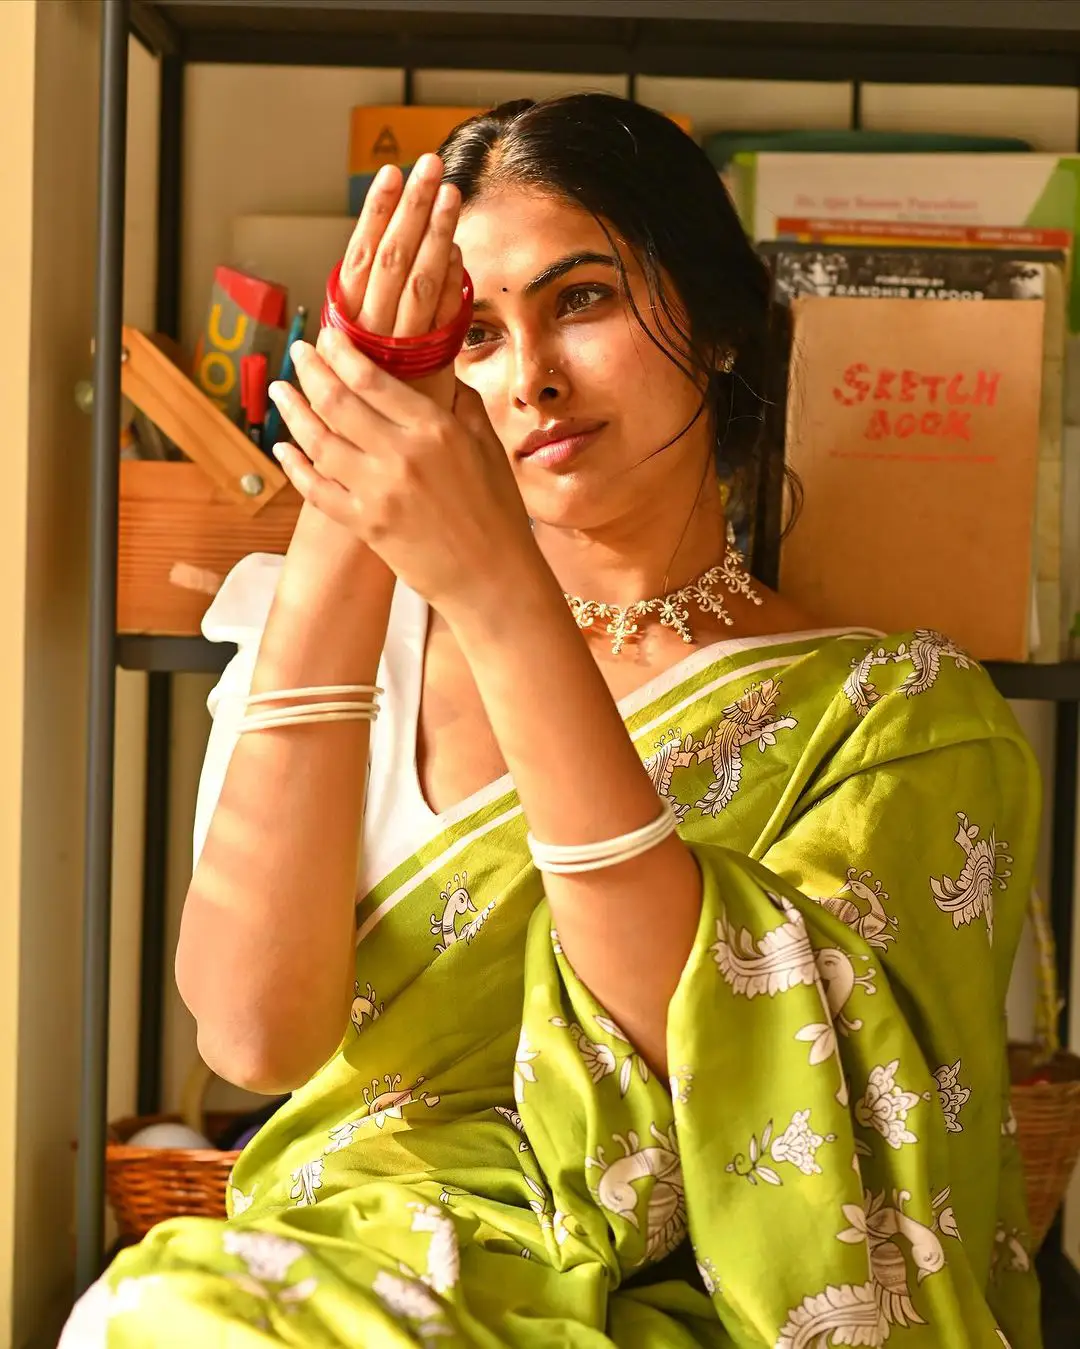 Actress Divi Stunning Looks in Saree